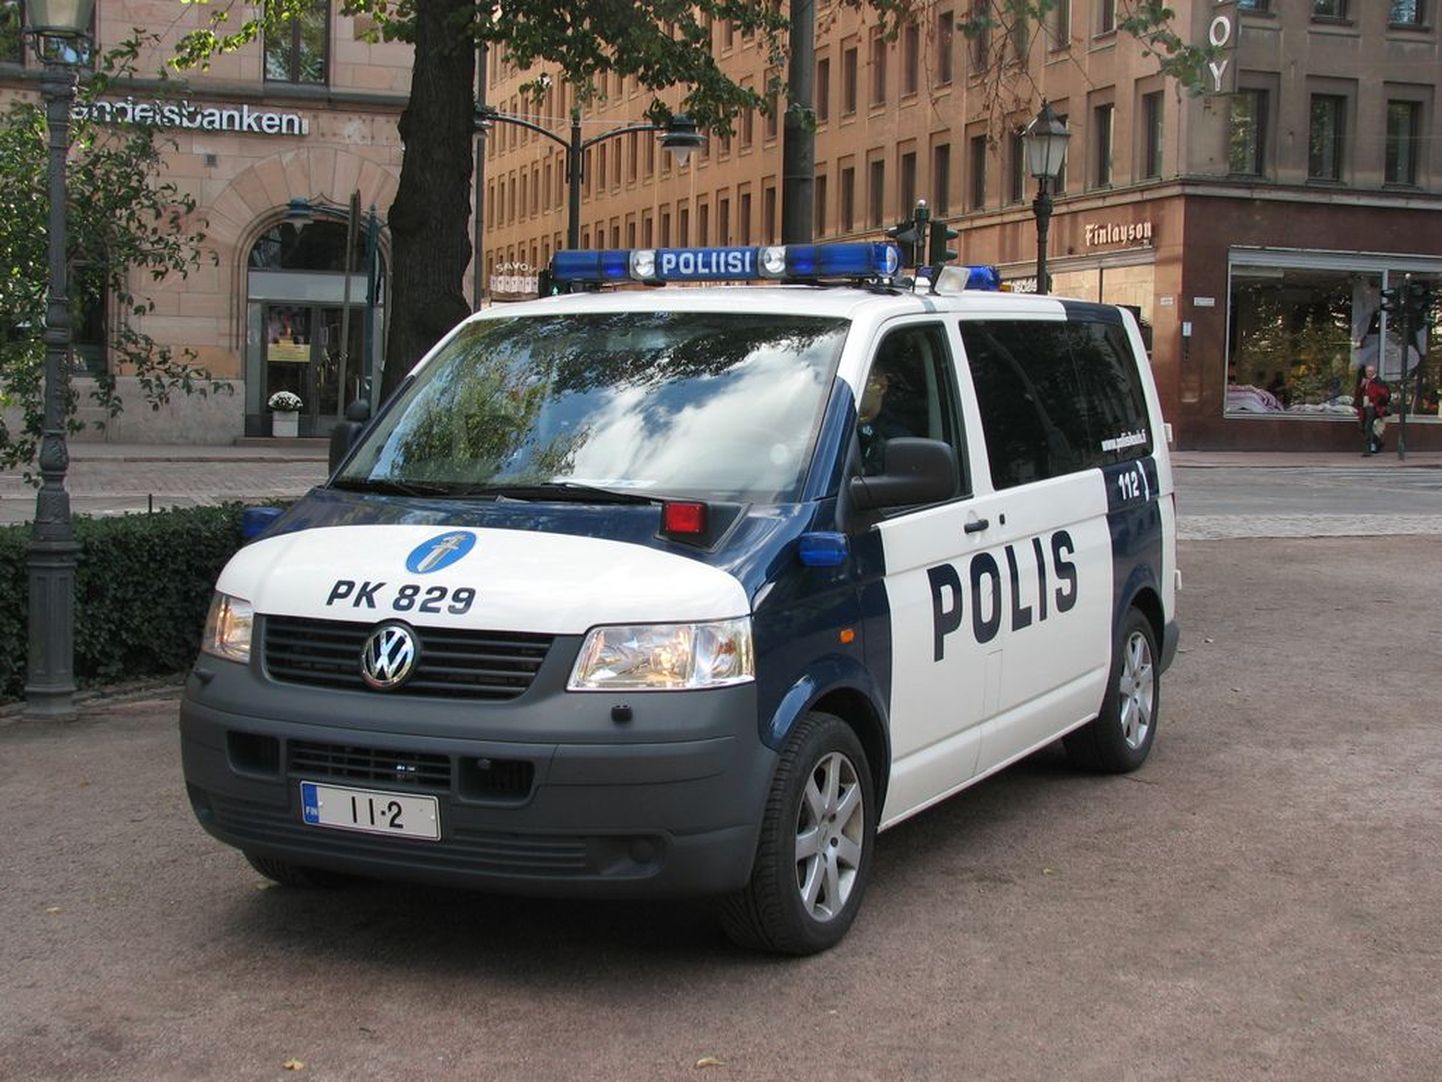 Soome politsei väikebuss